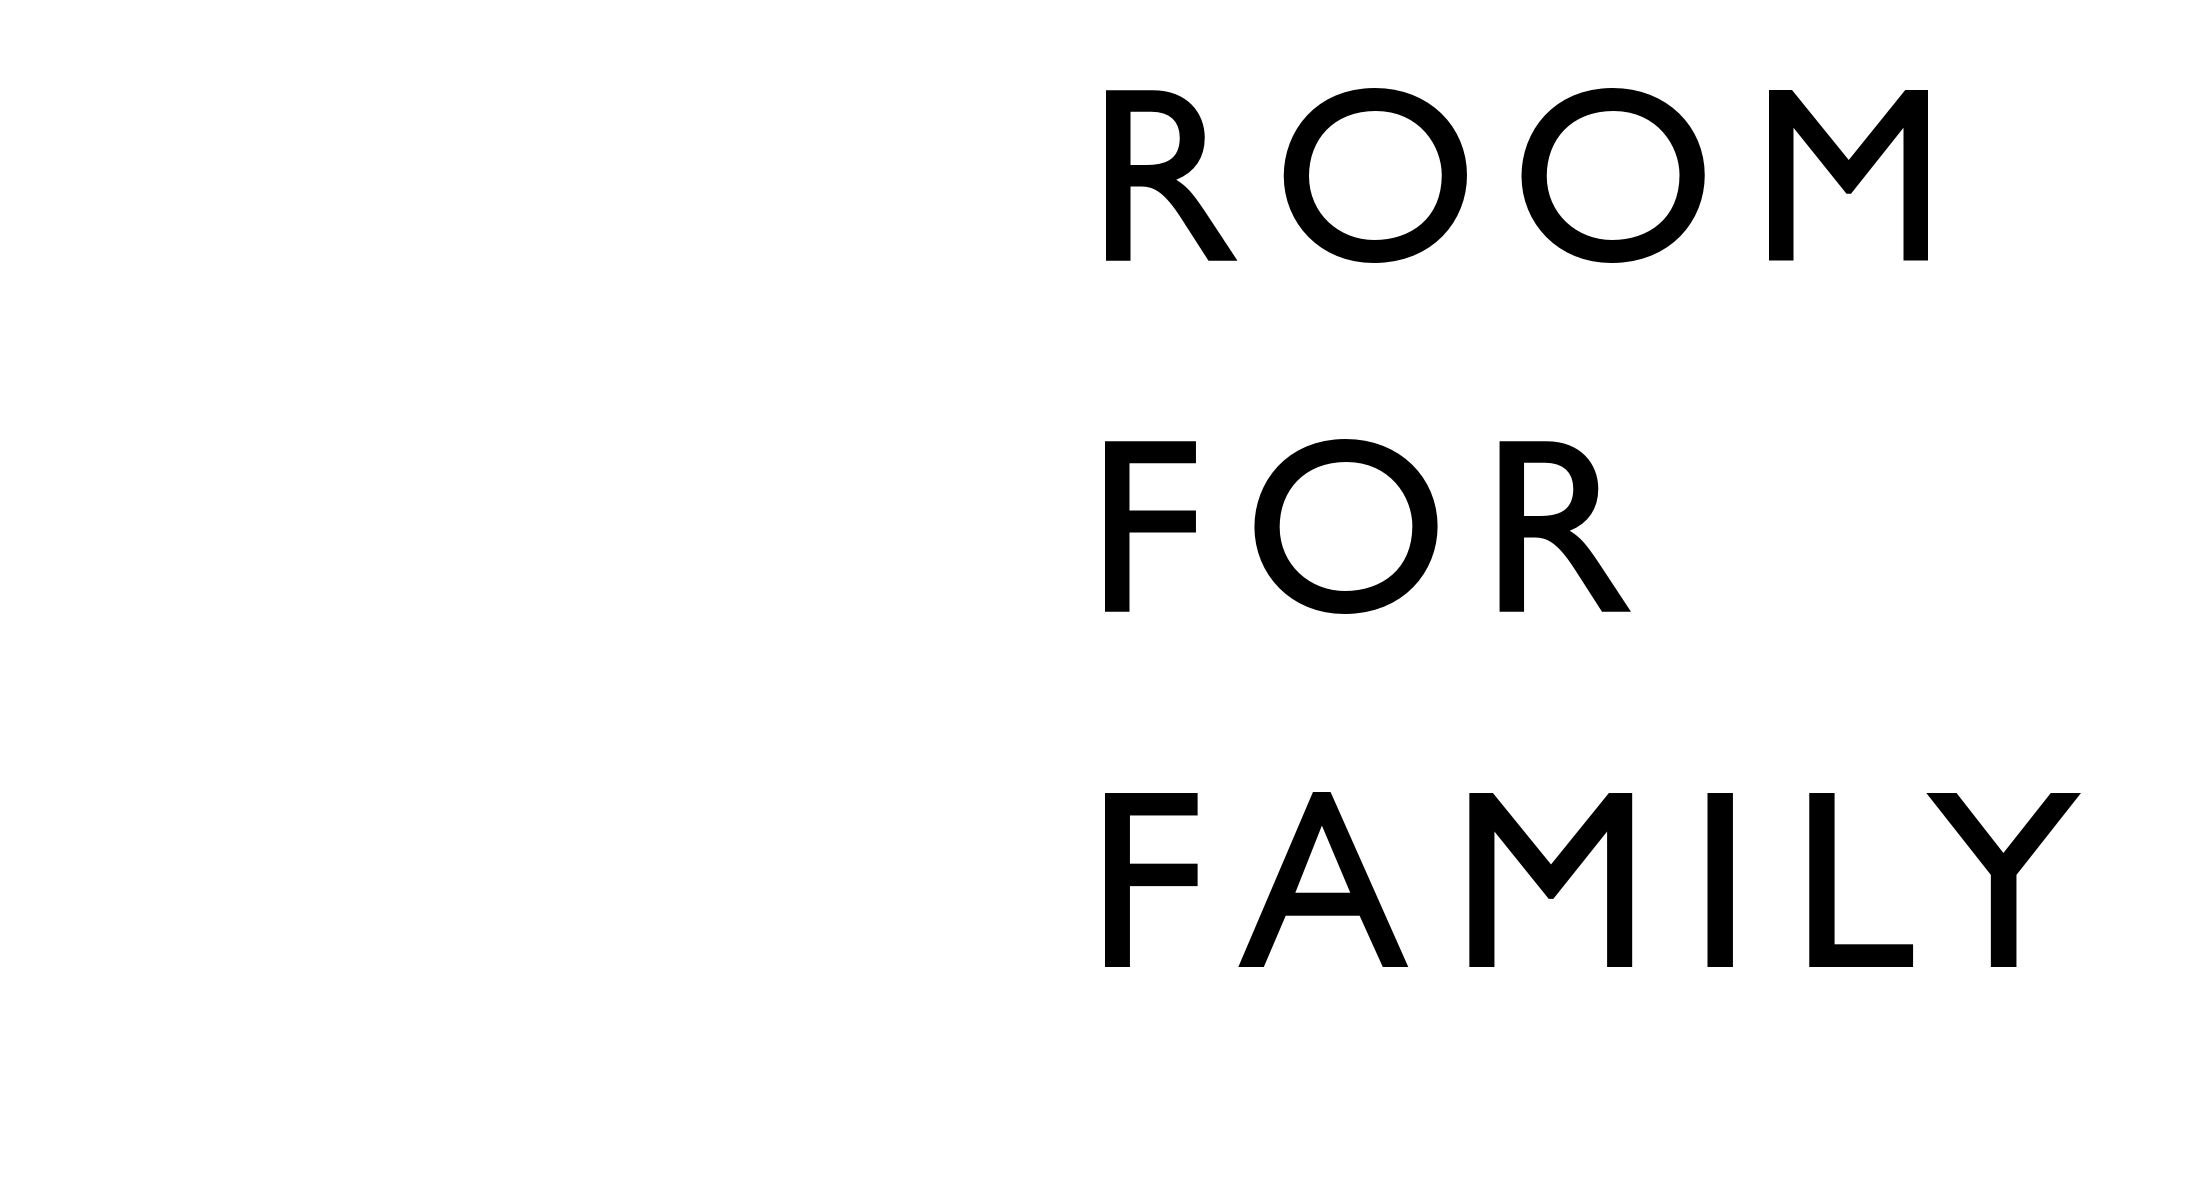 Room for Living - Room for Family